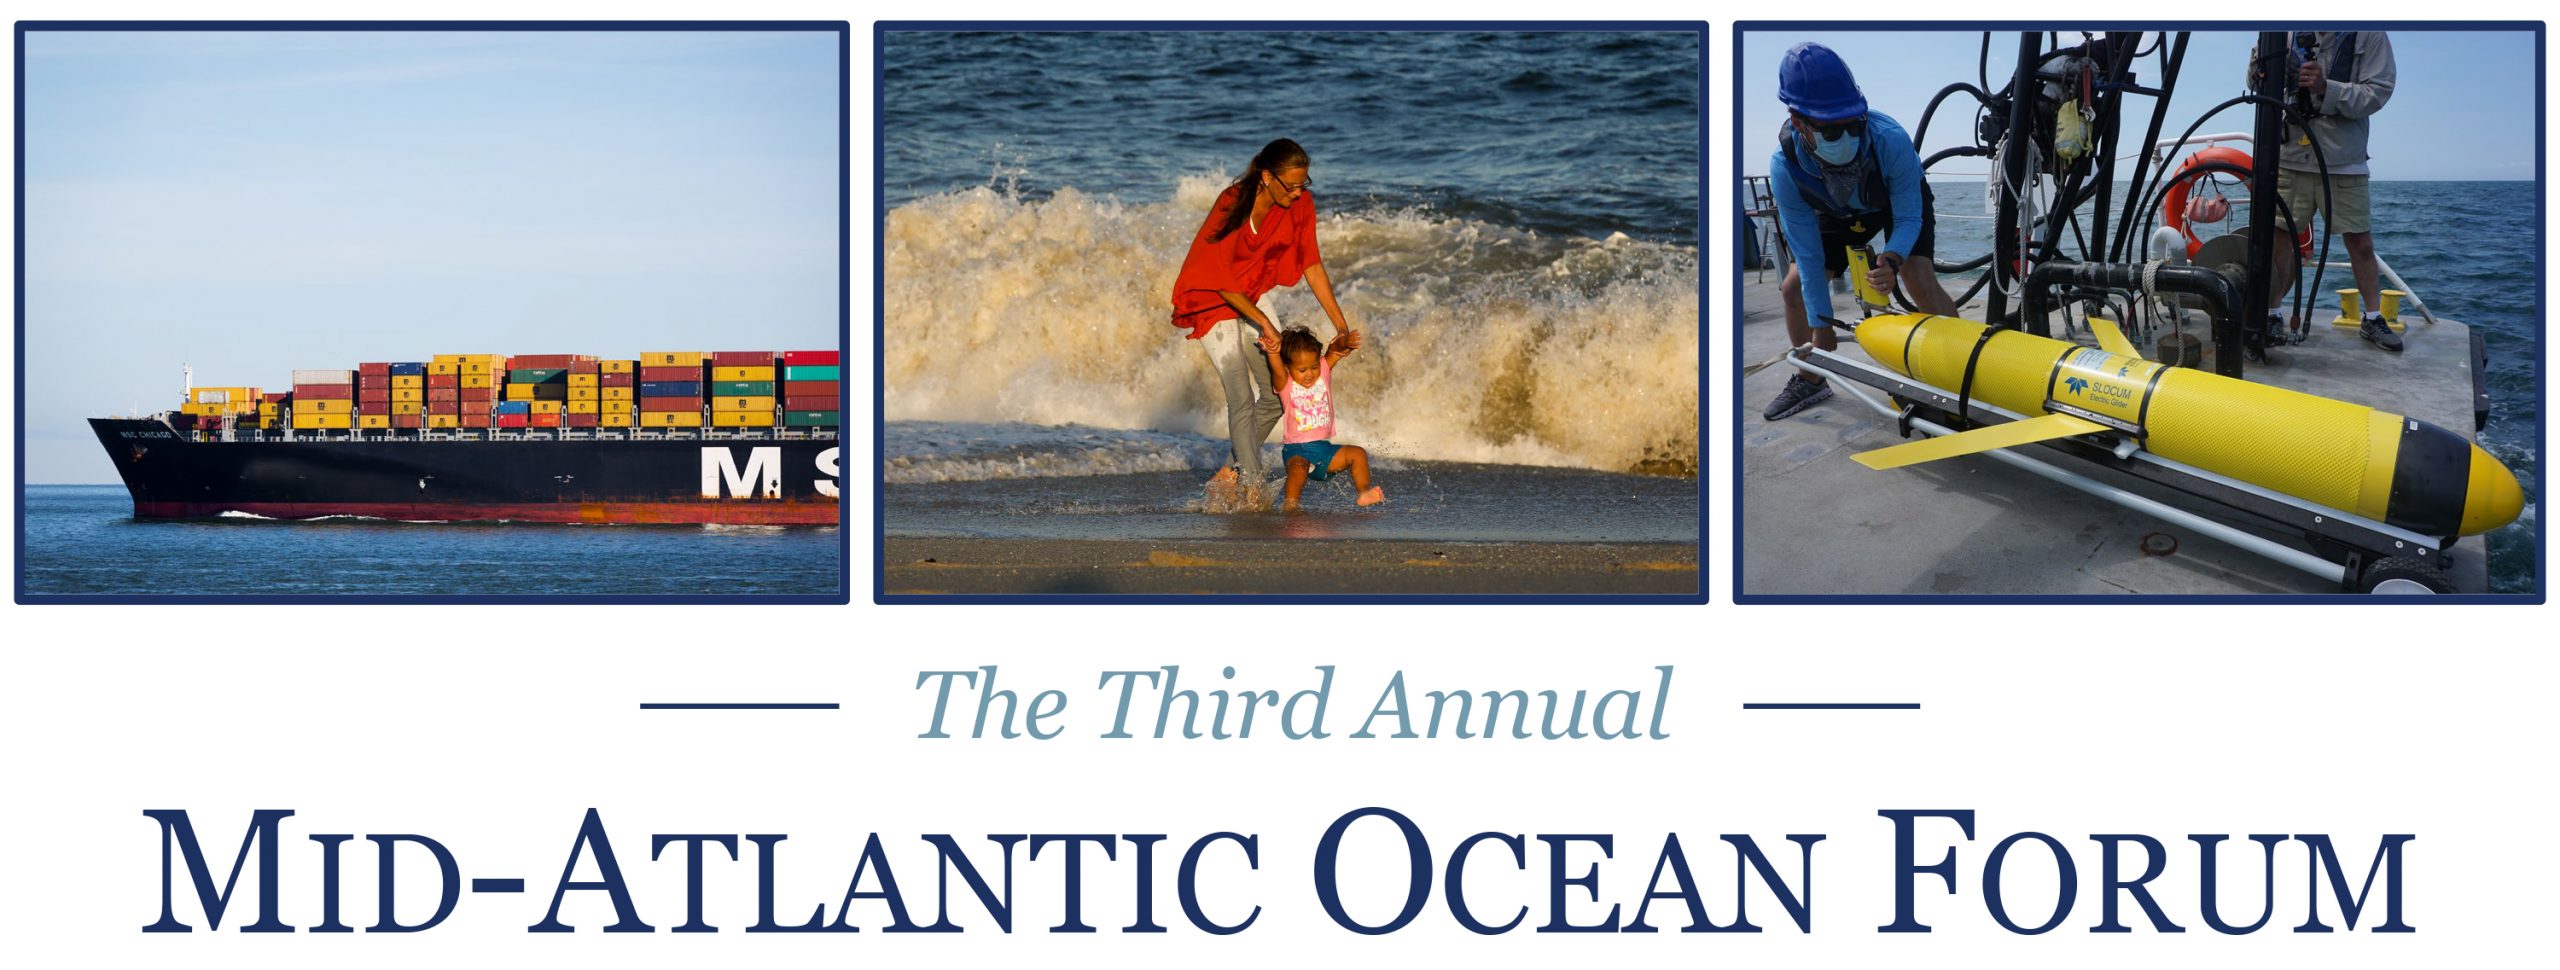 Third Annual Mid-Atlantic Ocean Forum logo